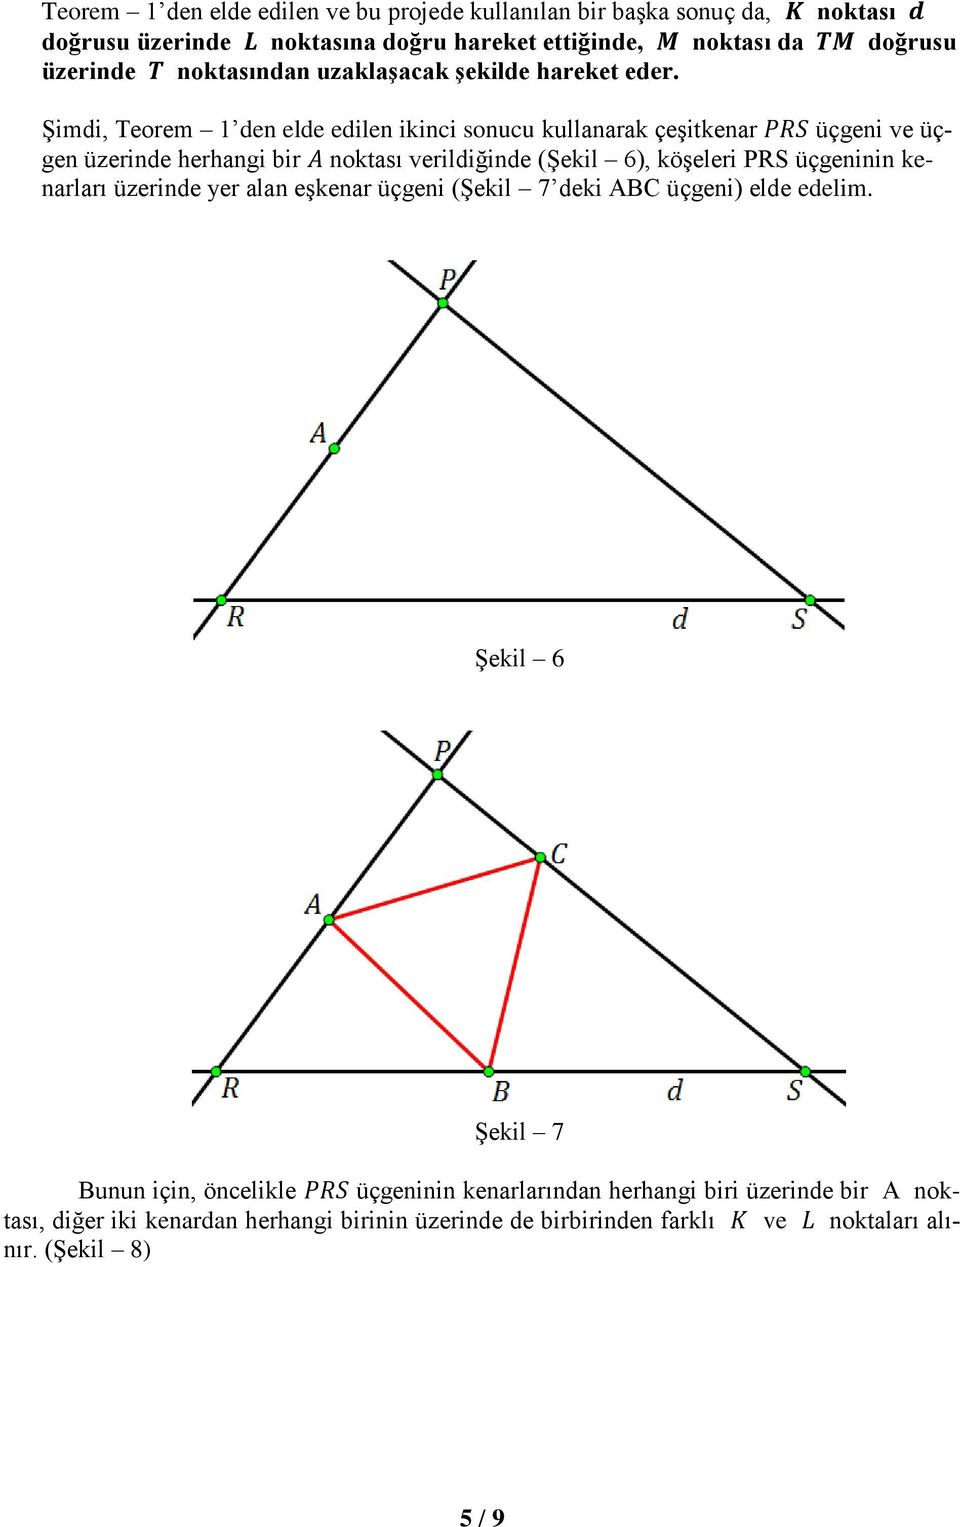 Şimdi, Teorem 1 den elde edilen ikinci sonucu kullanarak çeşitkenar üçgeni ve üçgen üzerinde herhangi bir noktası verildiğinde (Şekil 6), köşeleri PRS üçgeninin